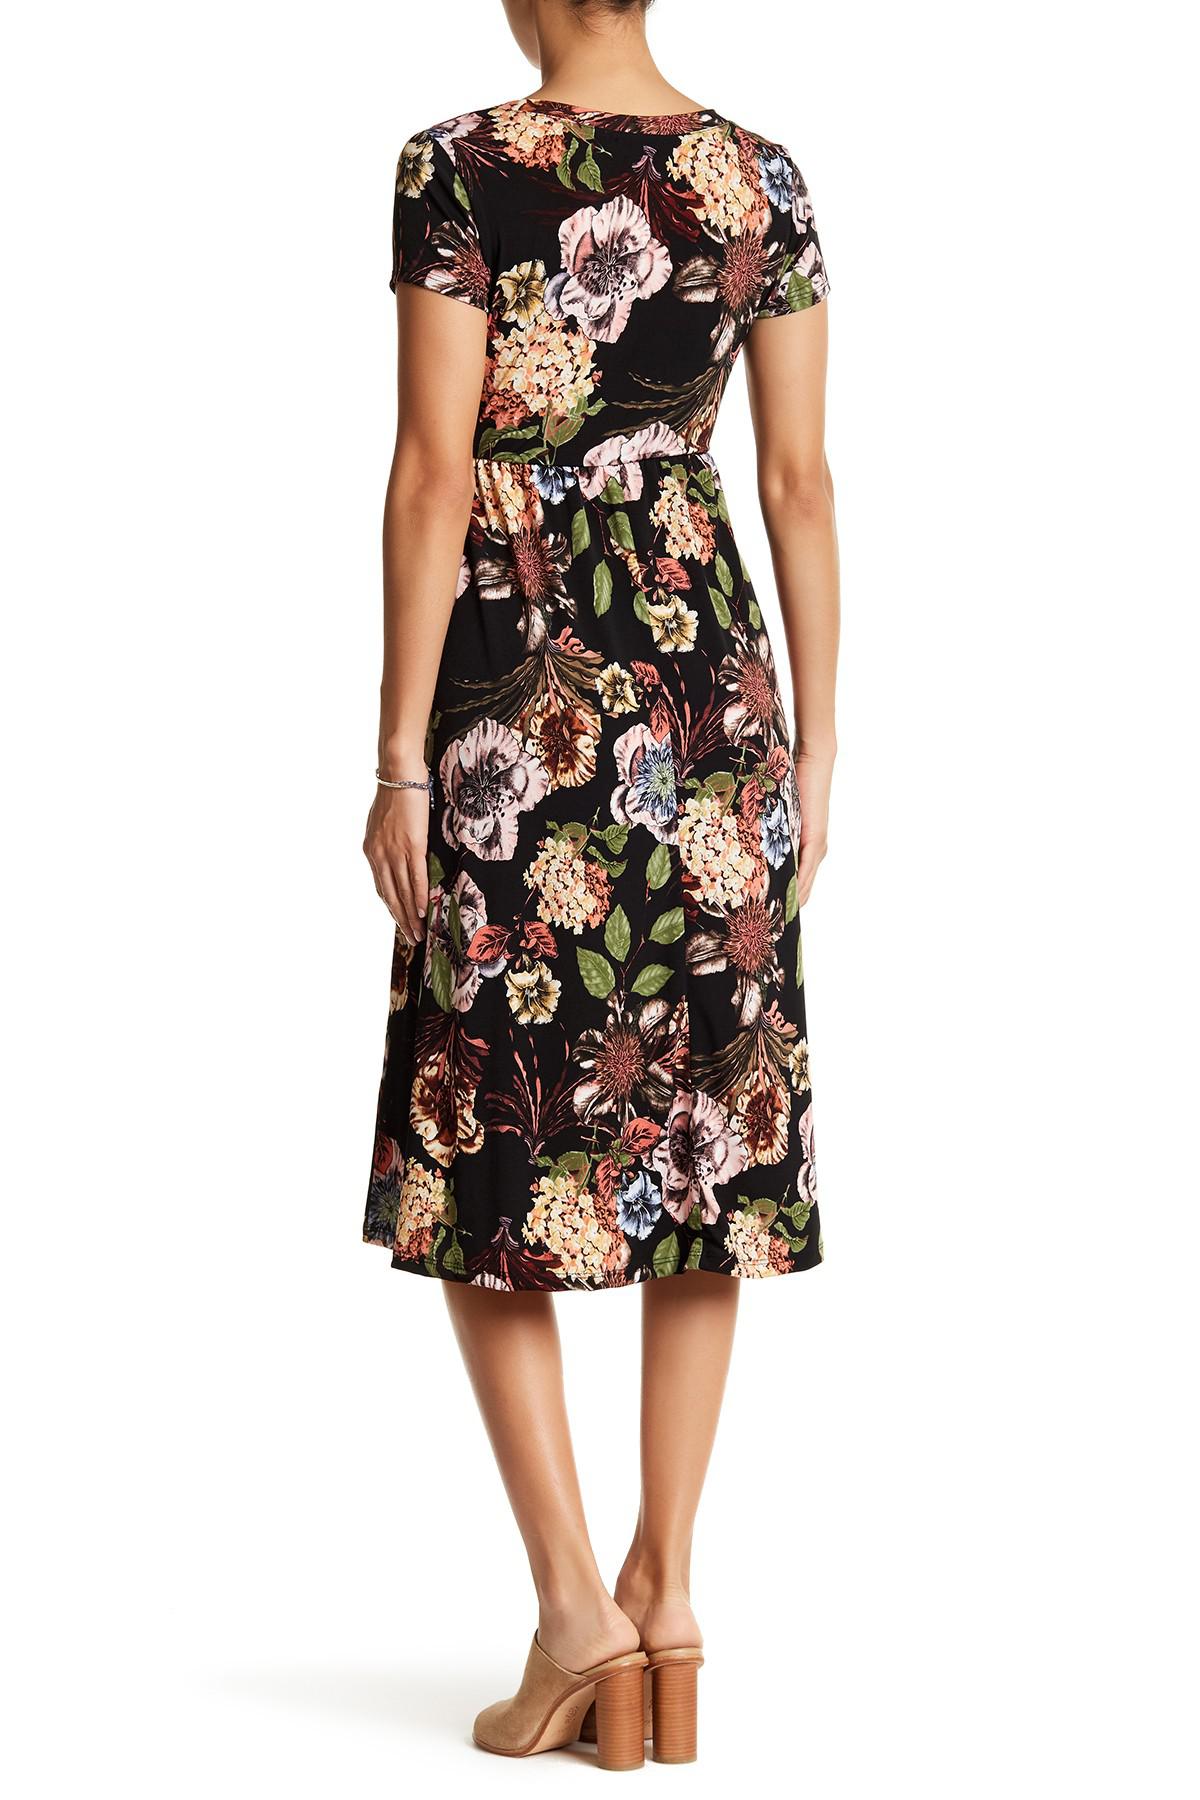 Lyst - West Kei Short Sleeve Floral Print Midi Dress in Black